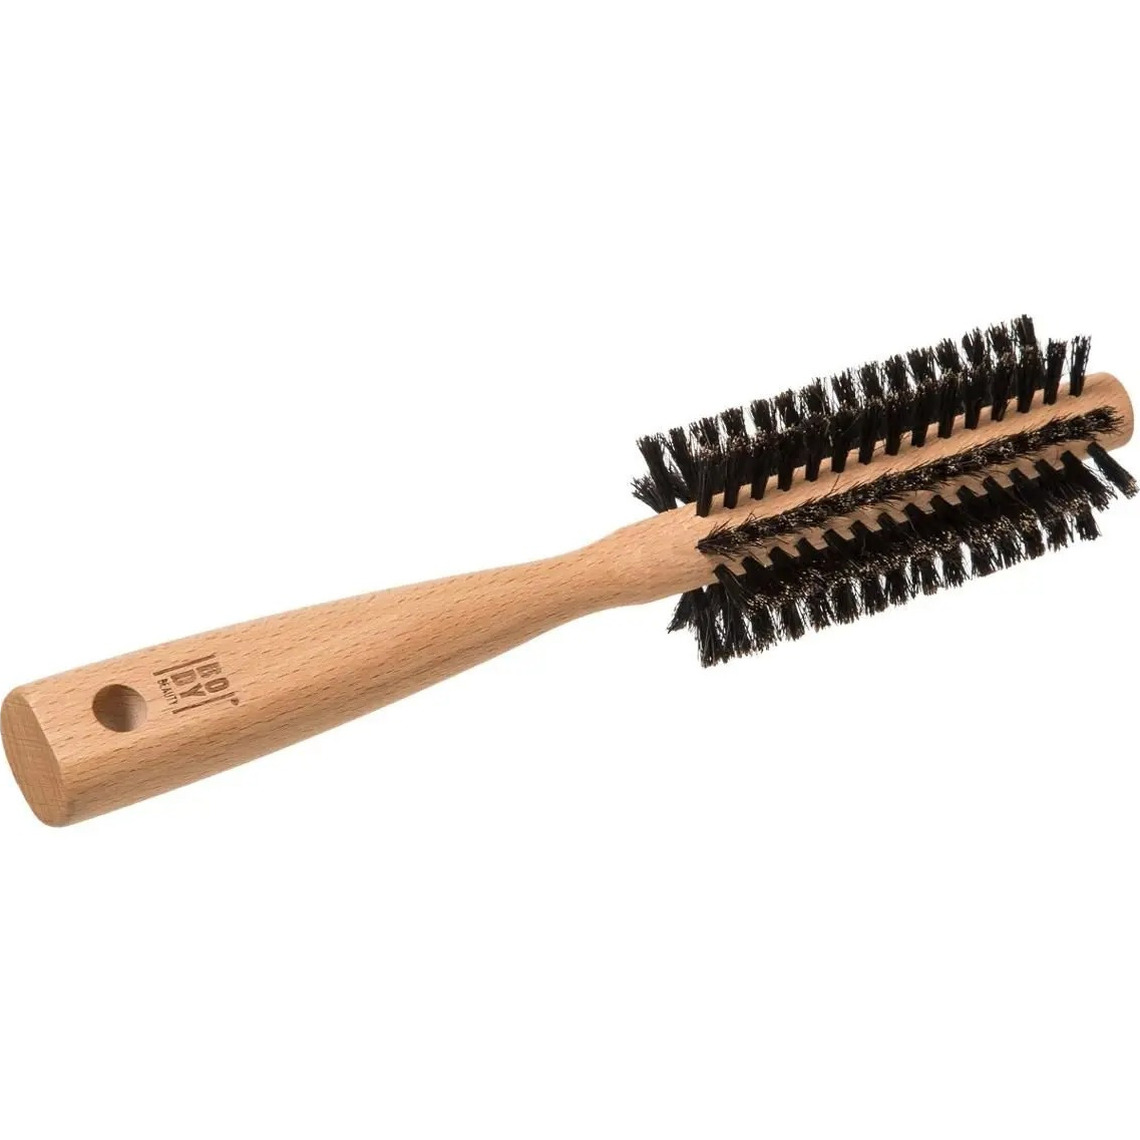 5five Haarborstel rond naturel met varkenshaar 24 cm van hout - Persoonlijke verzorging artikelen -